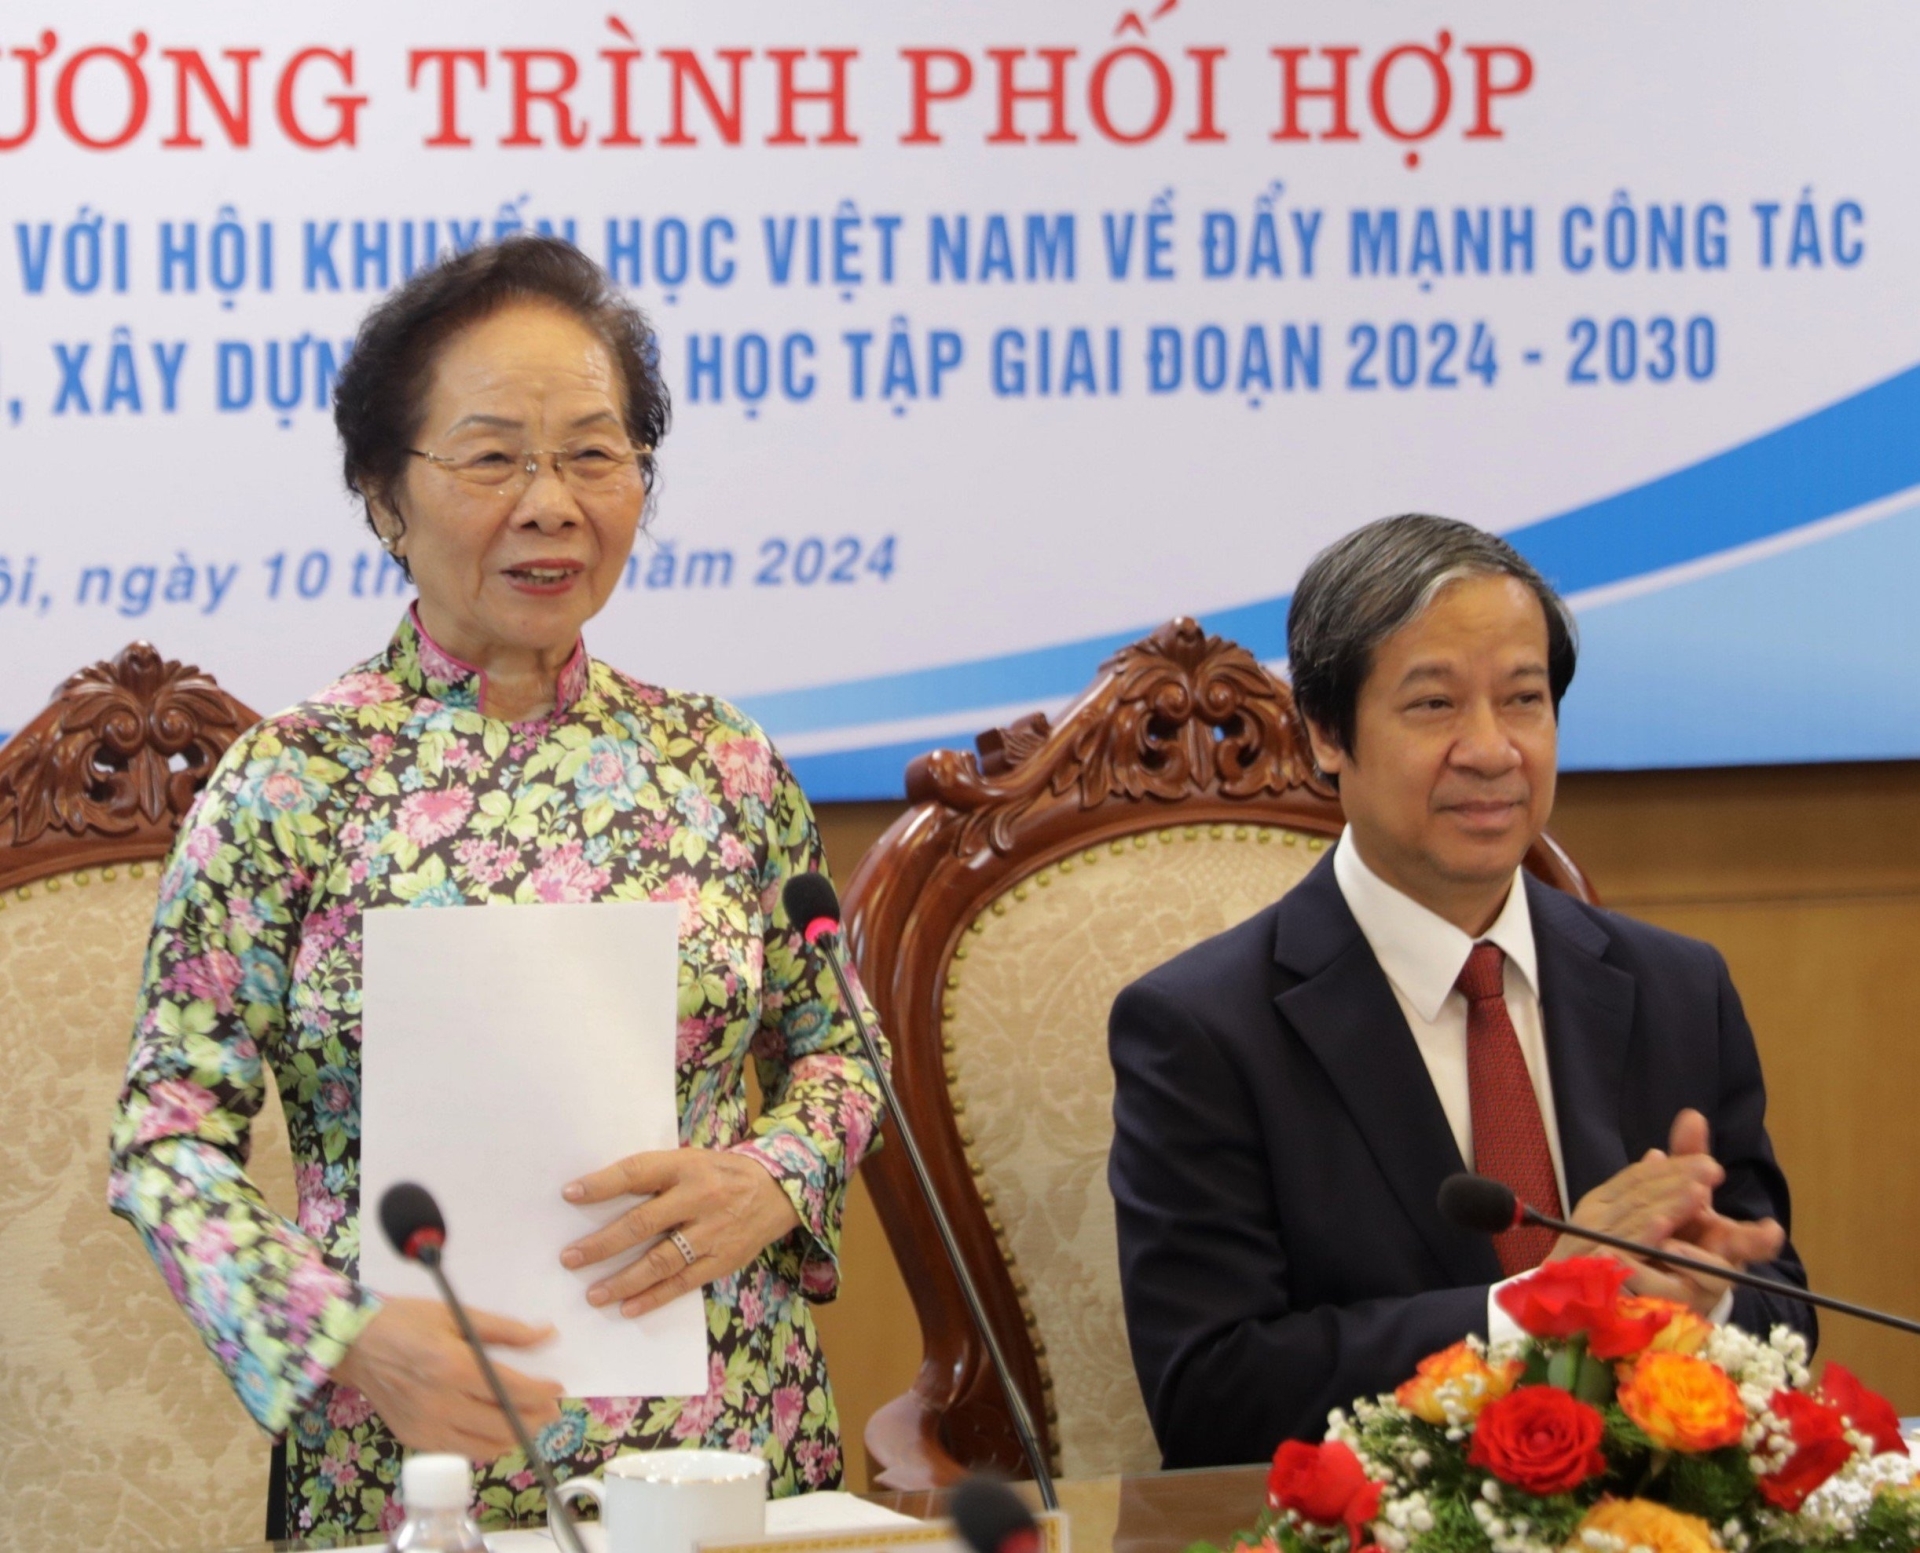 GS. TS. Nguyễn Thị Doan, Chủ tịch Hội Khuyến học Việt Nam phát biểu.